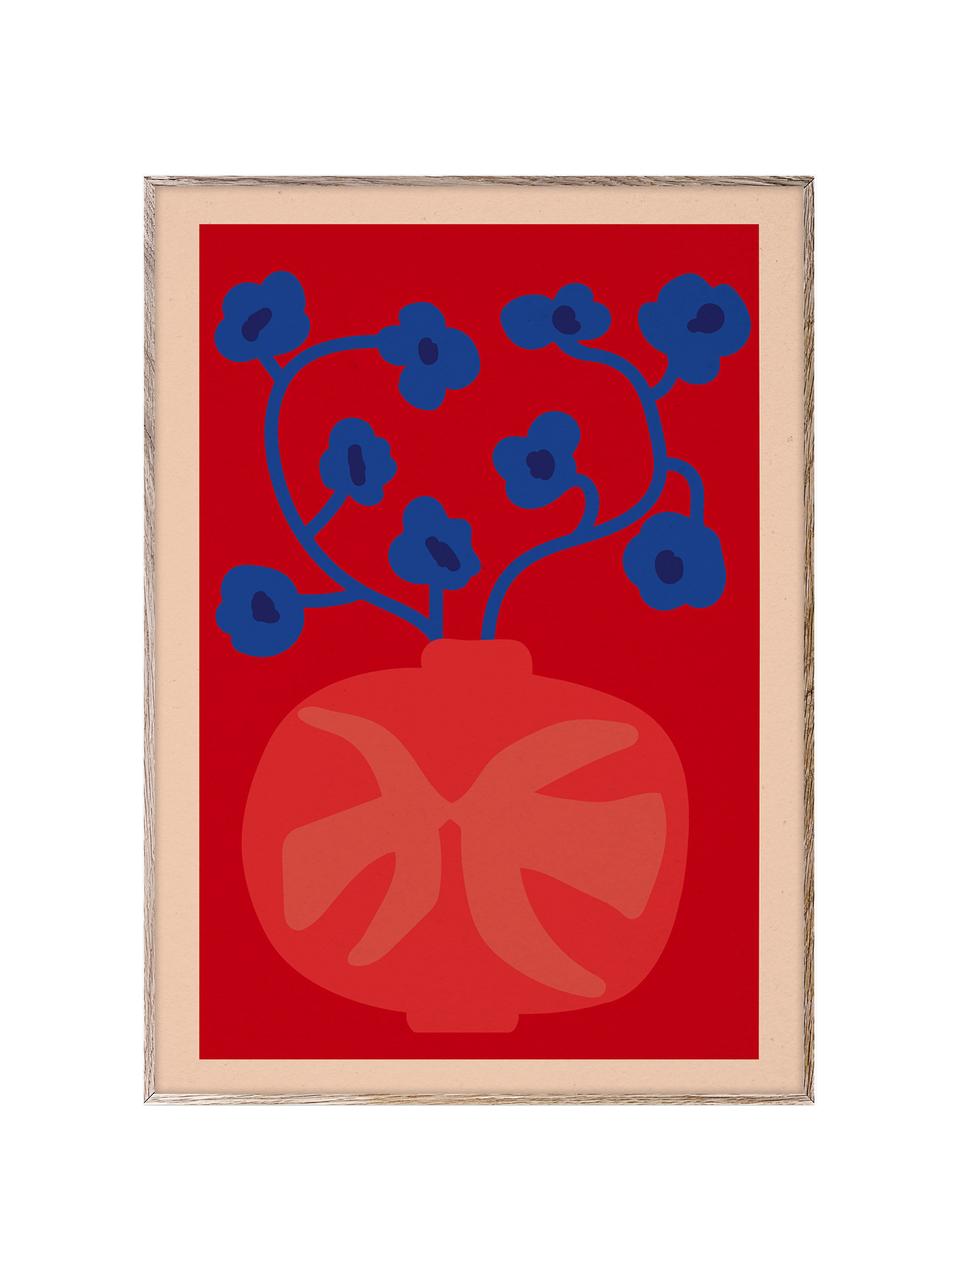 Plakát The Red Vase, 210g matný papír Hahnemühle, digitální tisk s 10 barvami odolnými vůči UV záření, Odstíny červené a modré, Š 30 cm, V 40 cm